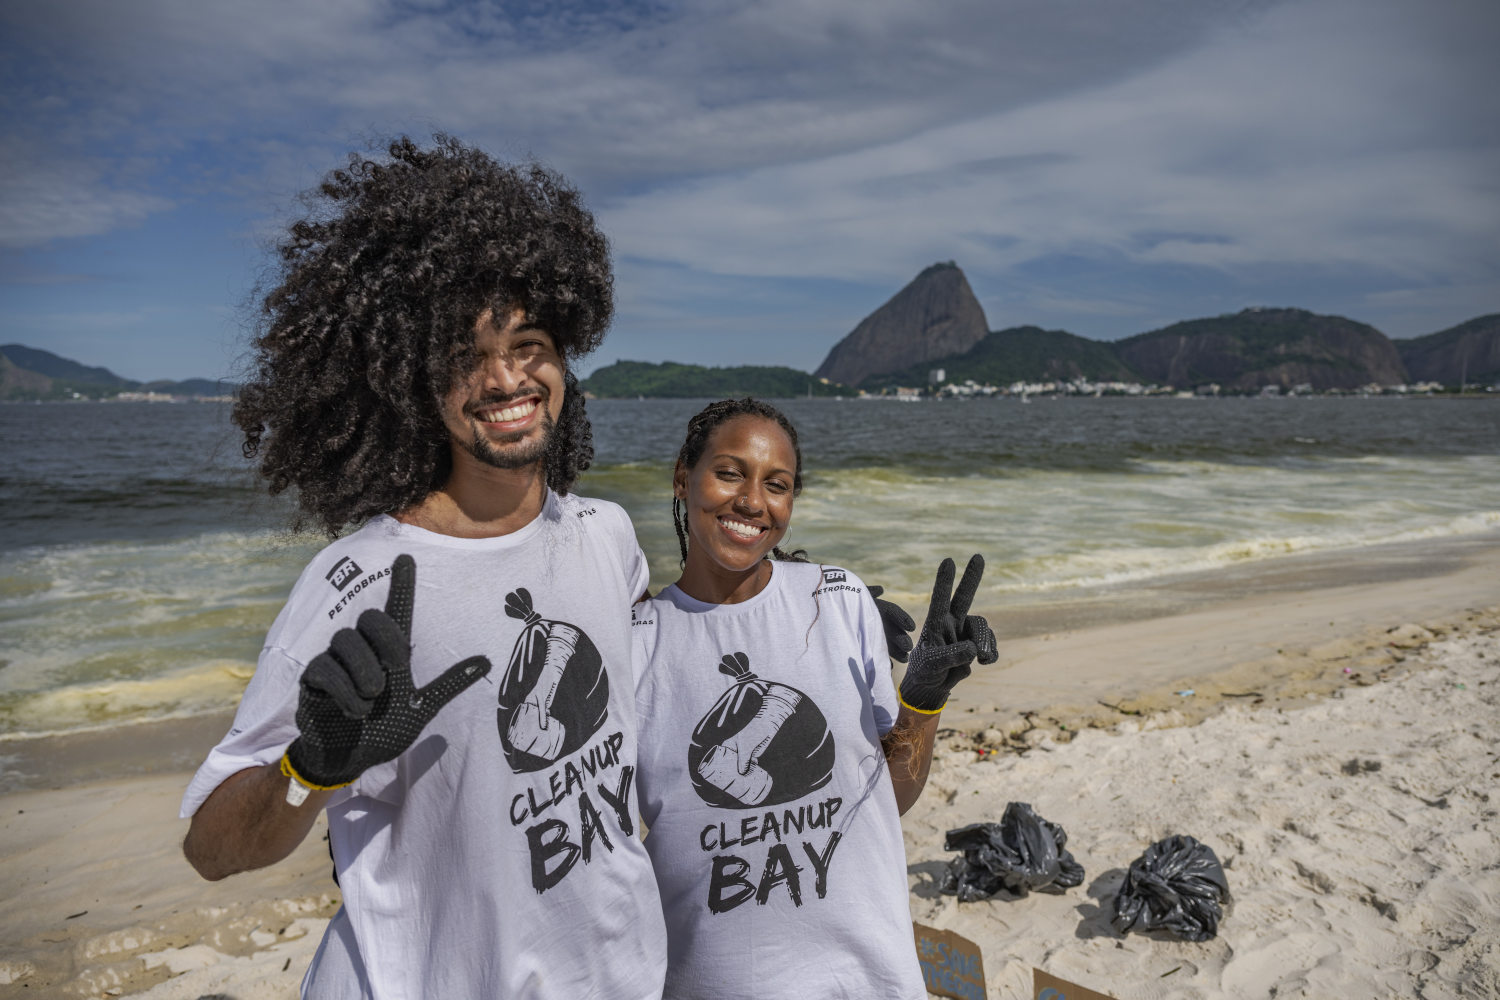 Homem e mulher posando para foto com camisa da iniciativa Clean Up Bay na praia com corcovado ao fundo